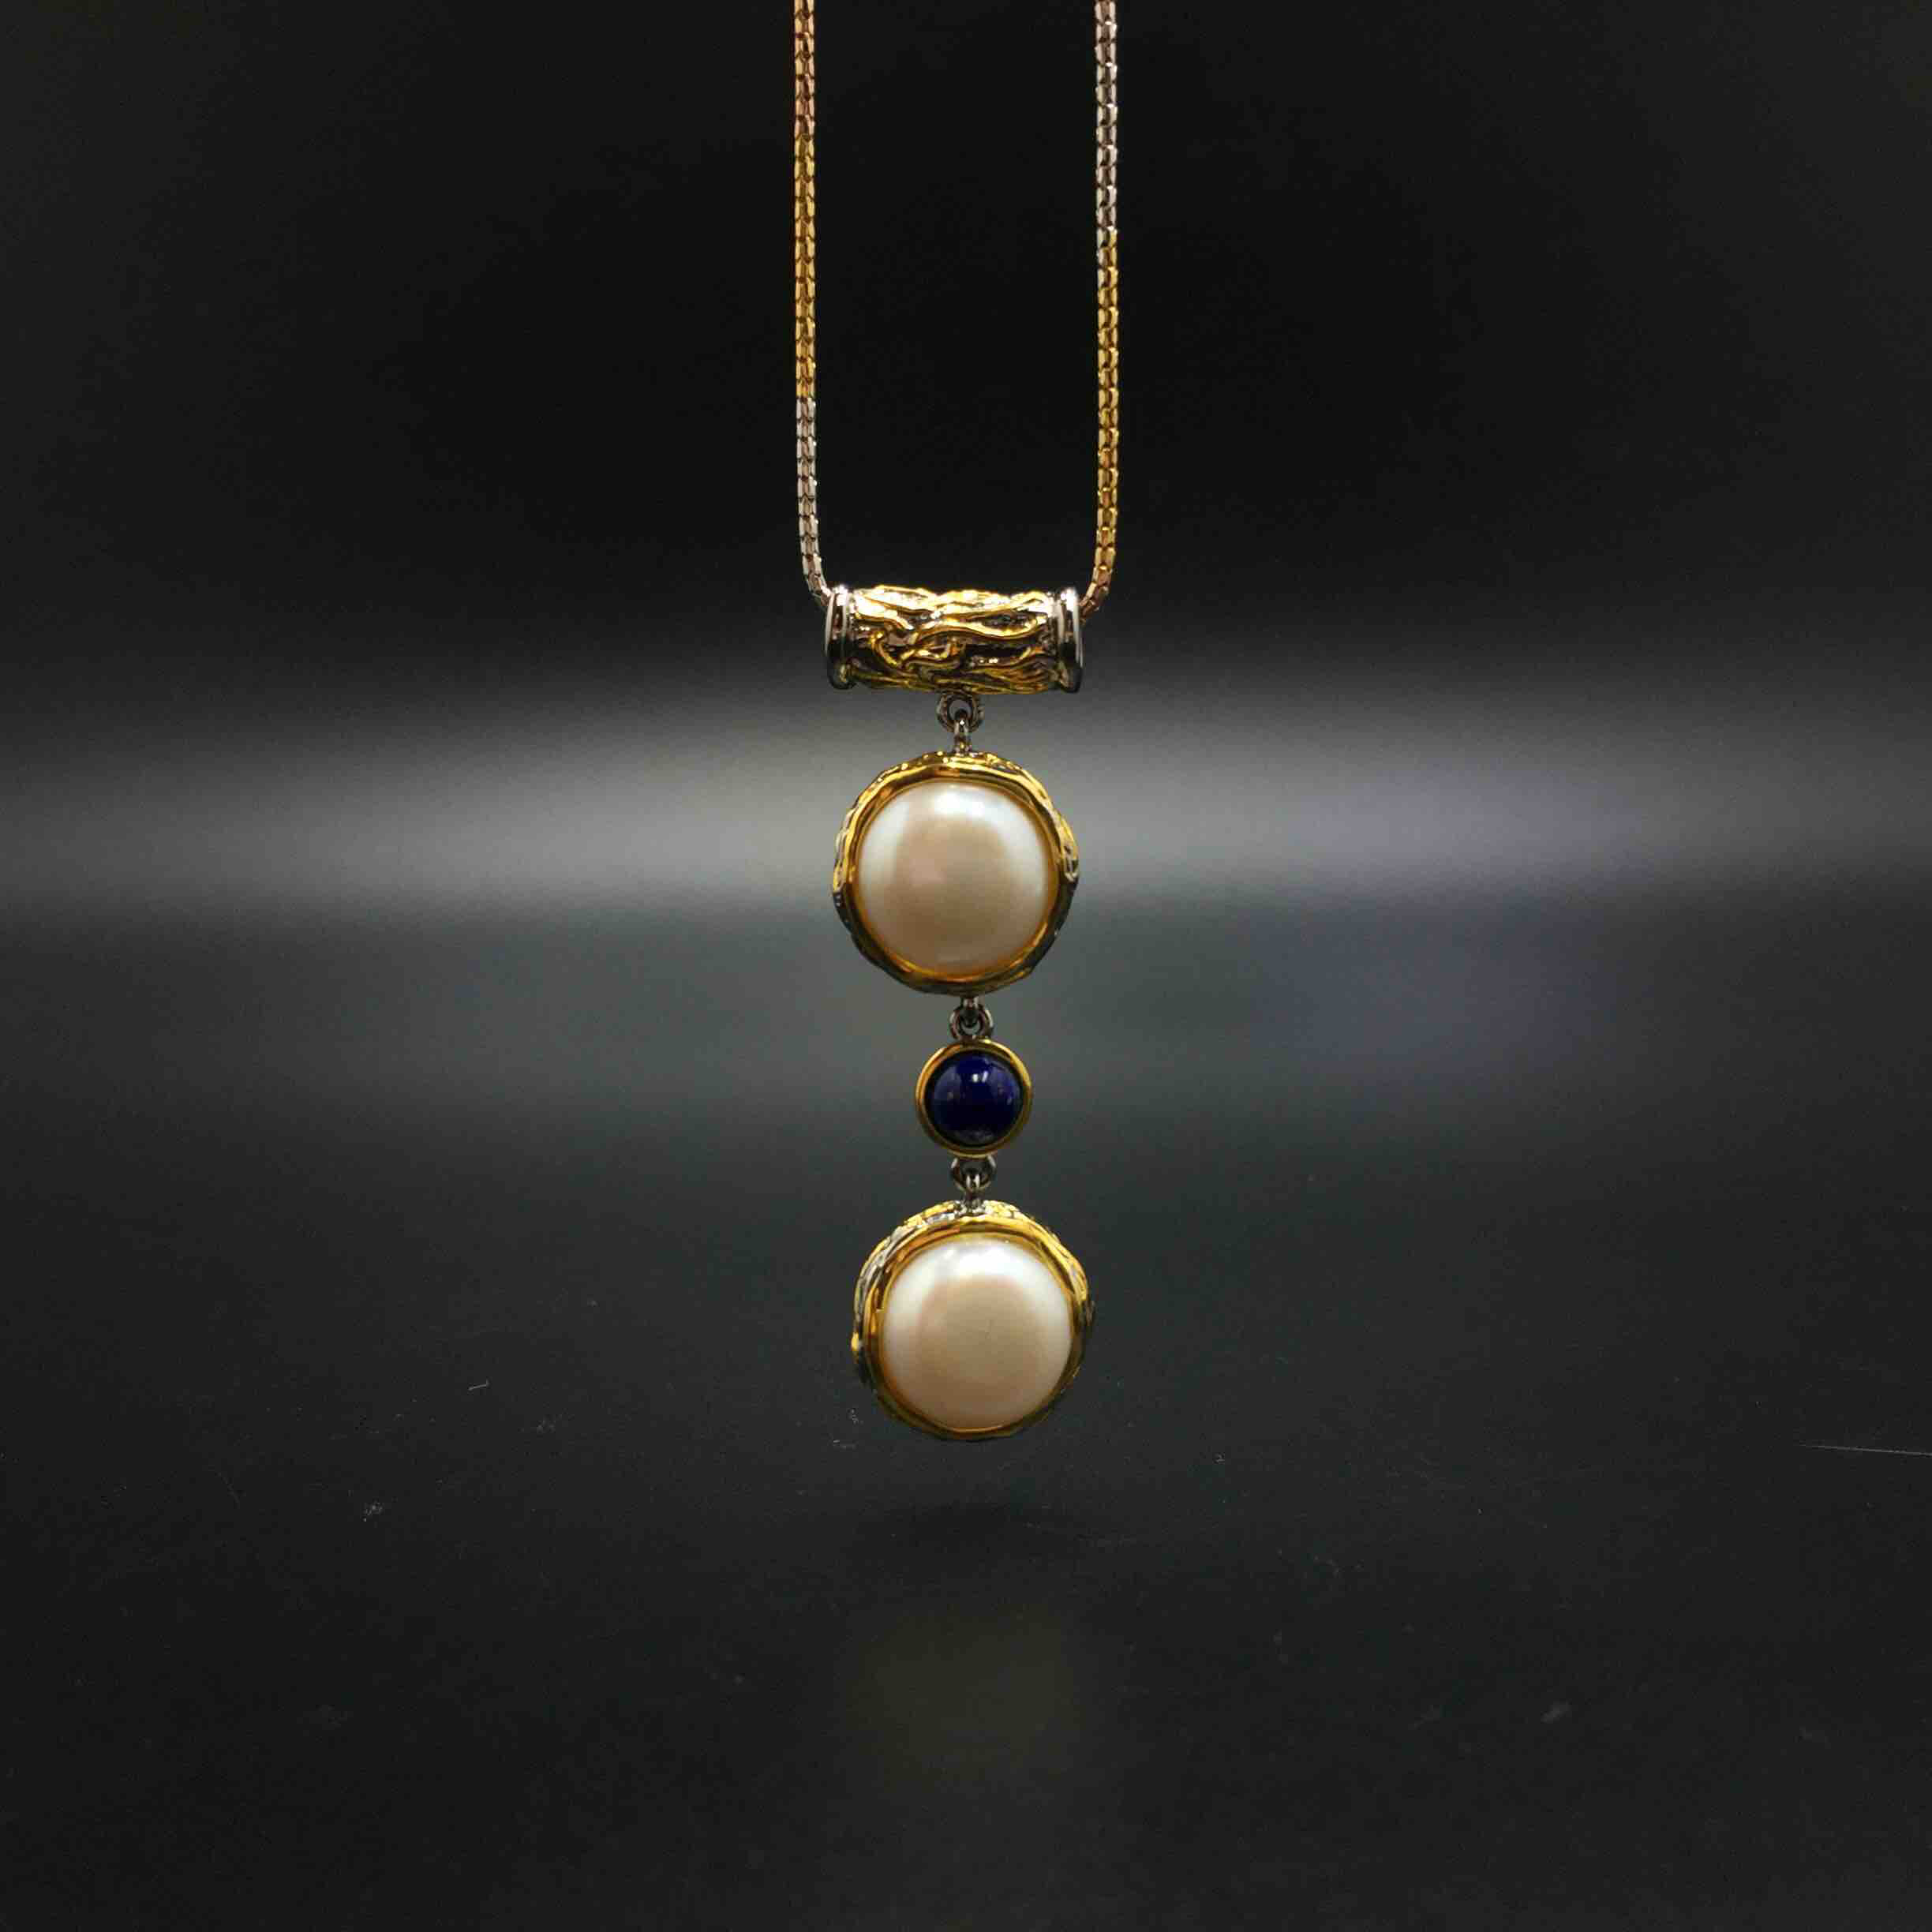 设计款银镀金镶嵌巴洛克珍珠吊坠尺寸大小如图独特魅力中间搭配青金石